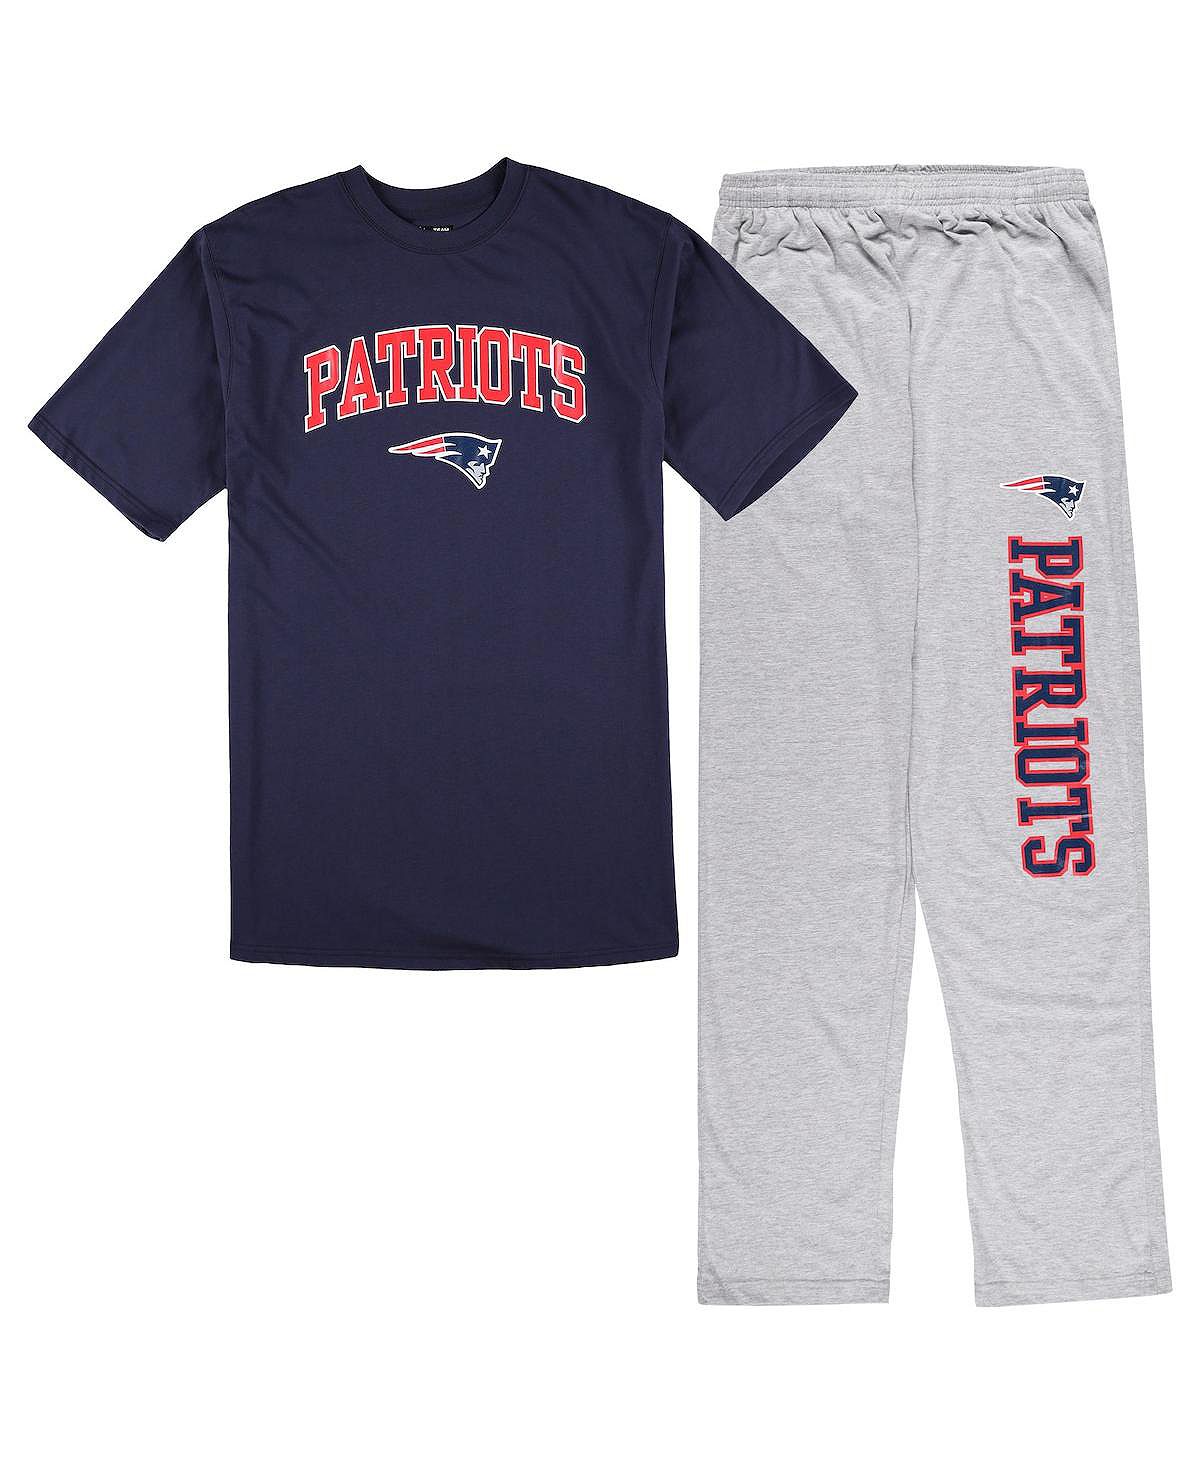 Мужской комплект для сна темно-синего цвета, цвета Хизер Грей, футболка New England Patriots Big and Tall и пижамные штаны Concepts Sport